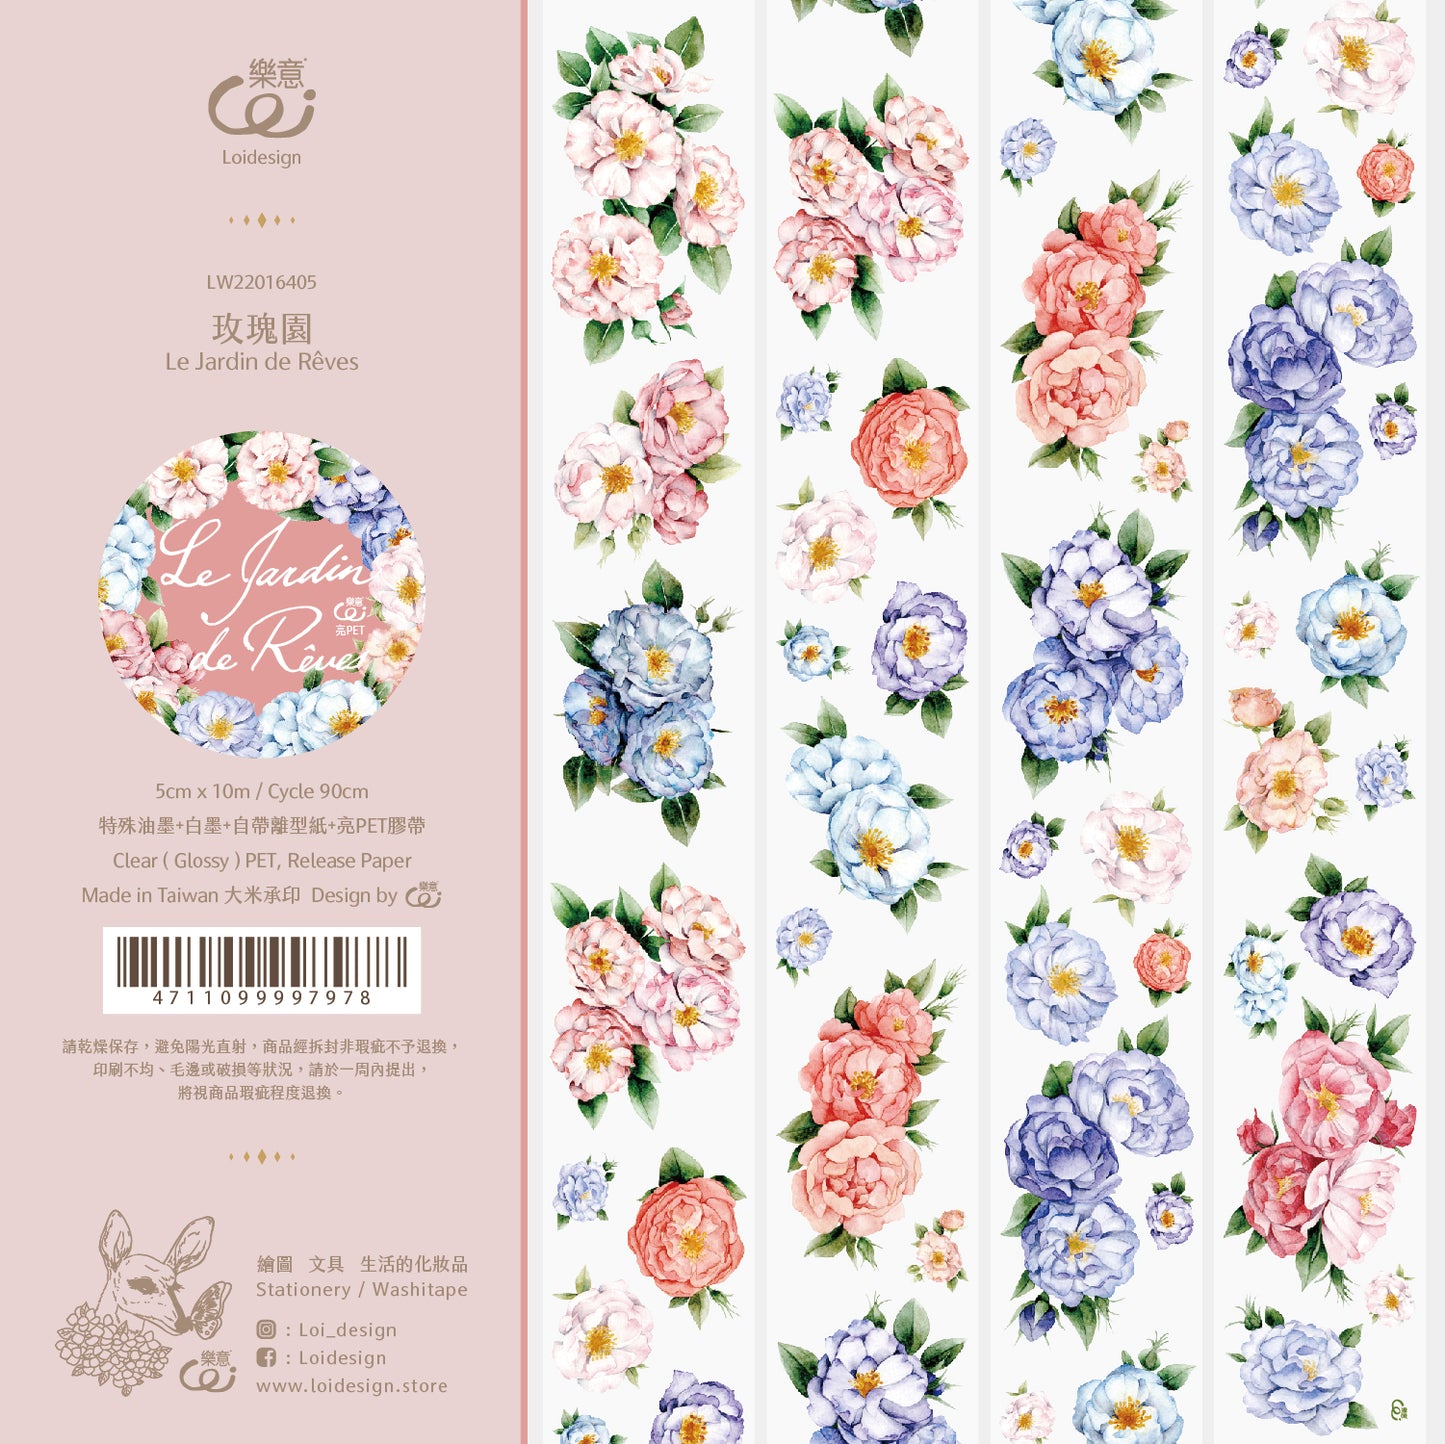 Loidesign Rose Garden Glossy PET Tape, 50mm